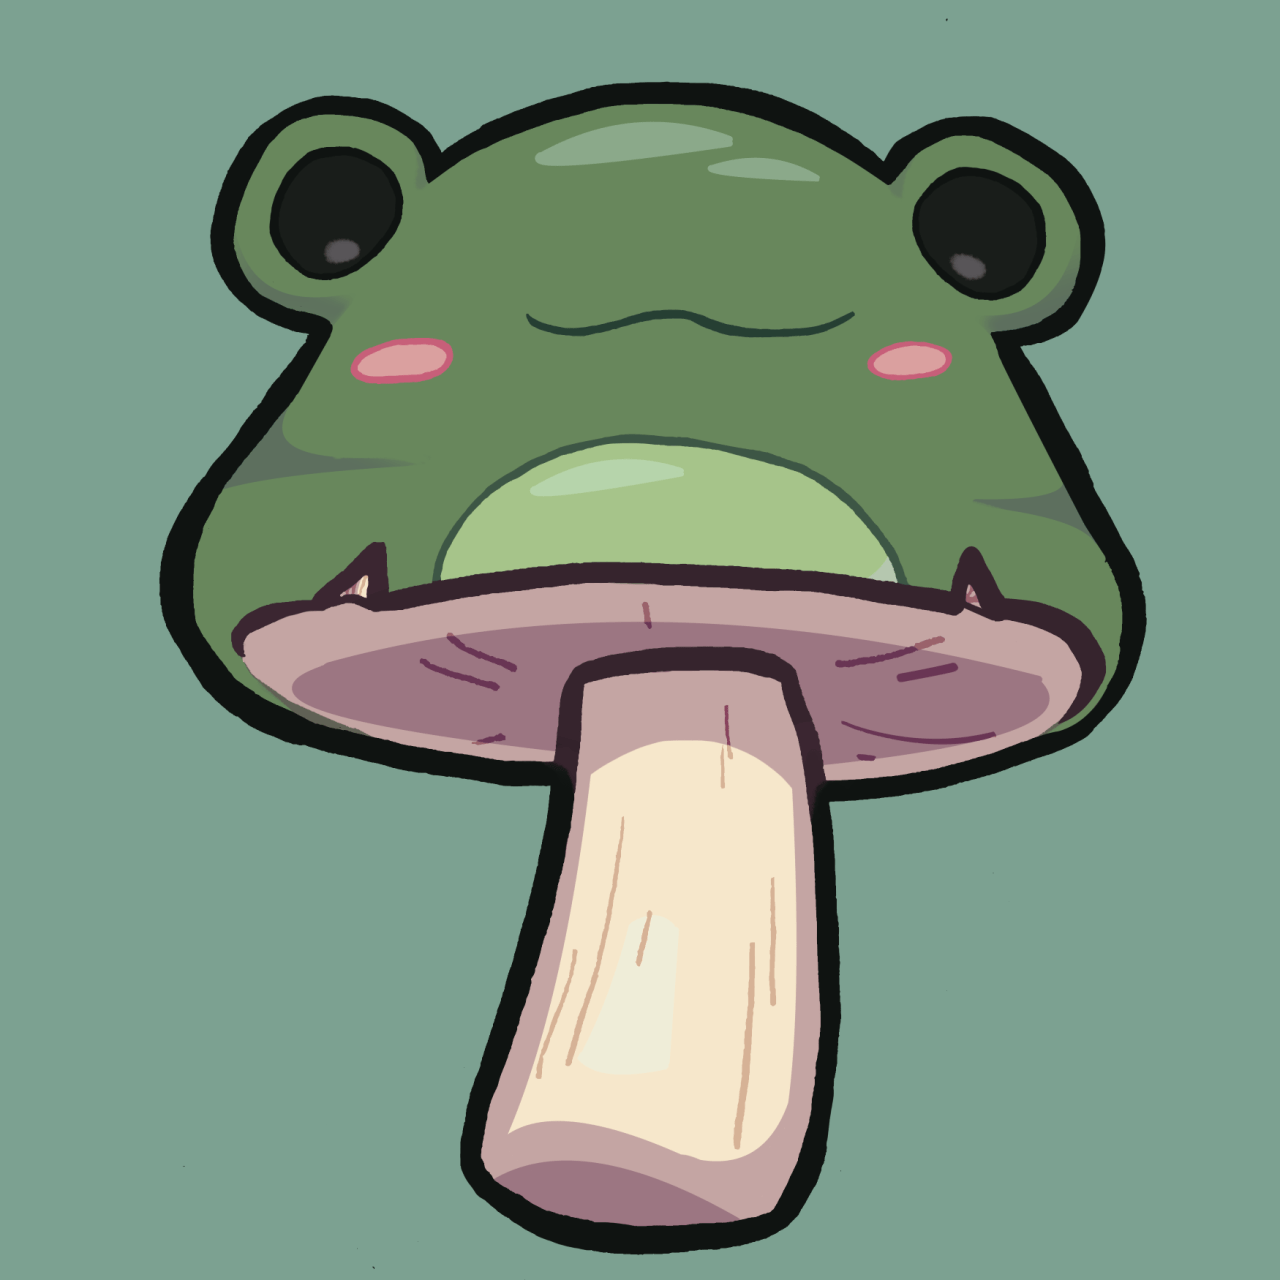 HD desktop wallpaper Fantasy Rain Love Mushroom Creature Cute Frog  download free picture 966251